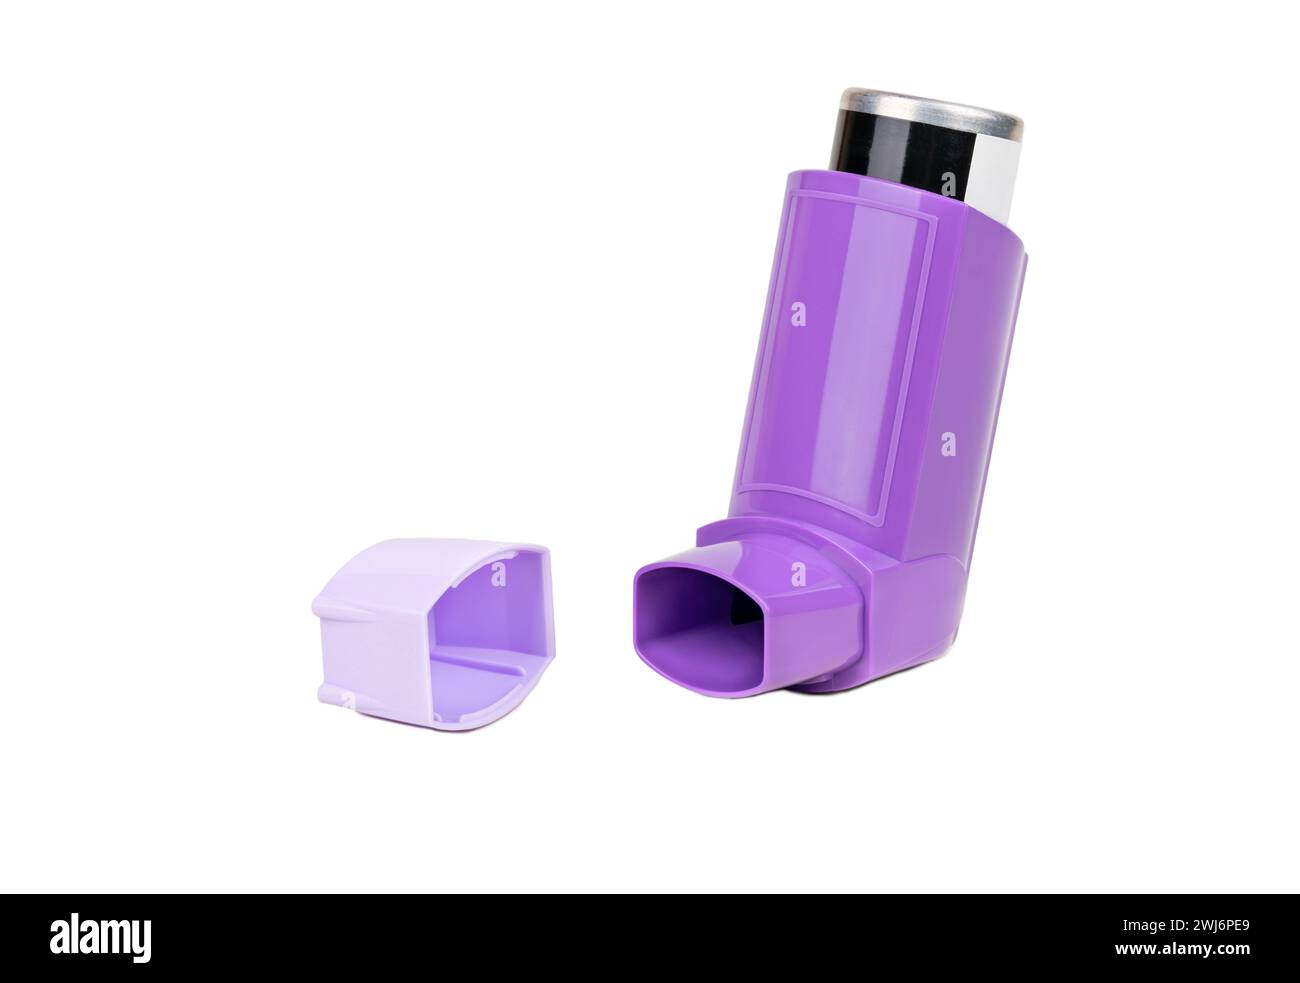 Bouteille ouverte de spray pour asthmatiques avec bouchon isolé sur fond blanc Banque D'Images